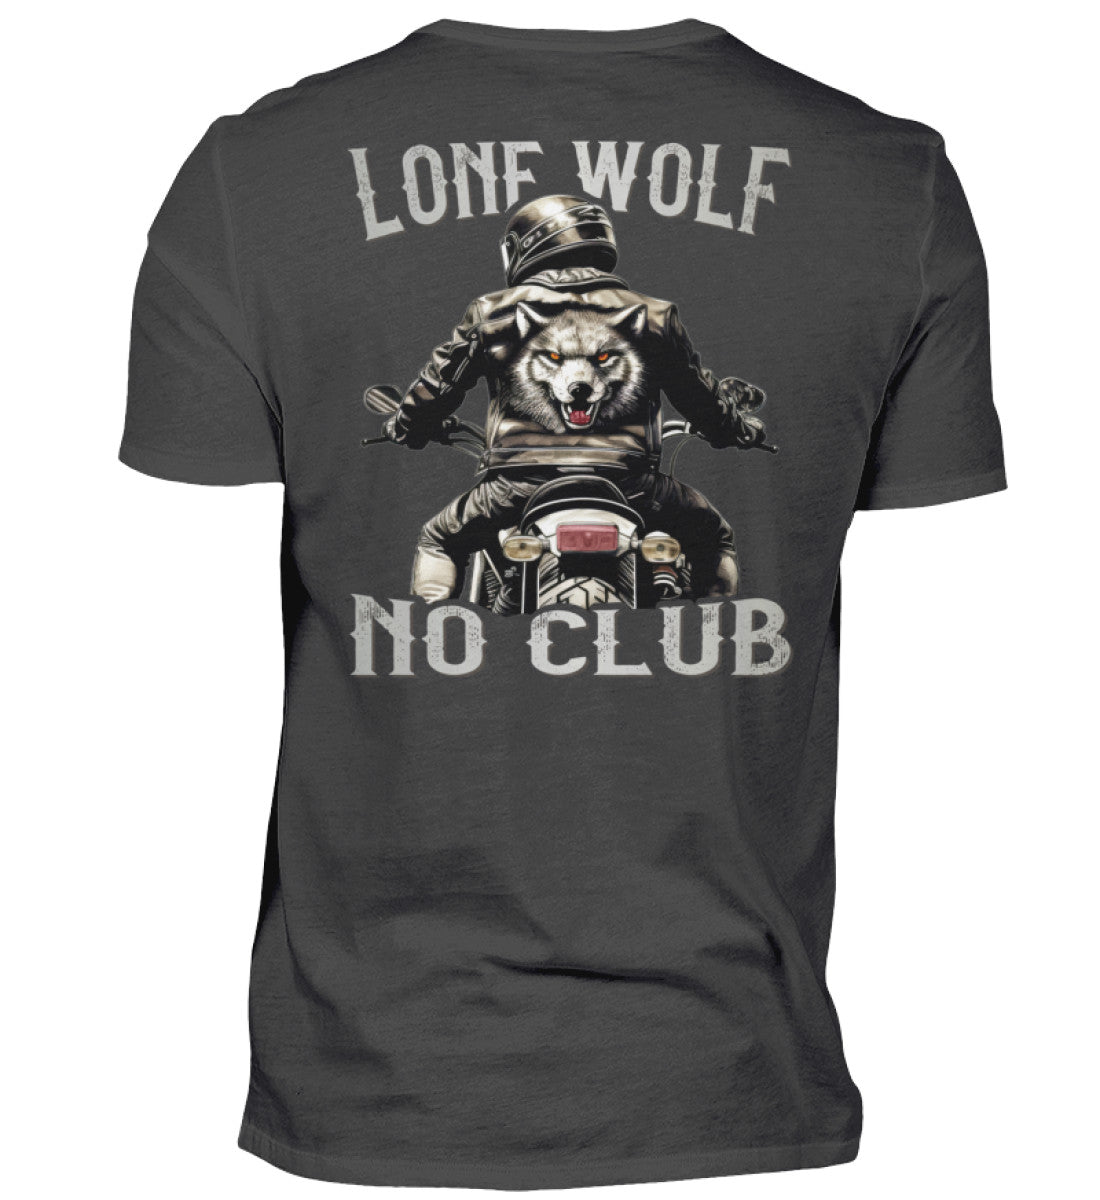 Ein Biker T-Shirt für Motorradfahrer von Wingbikers mit dem Aufdruck, Lone Wolf - No Club, als Back Print, in dunkelgrau.